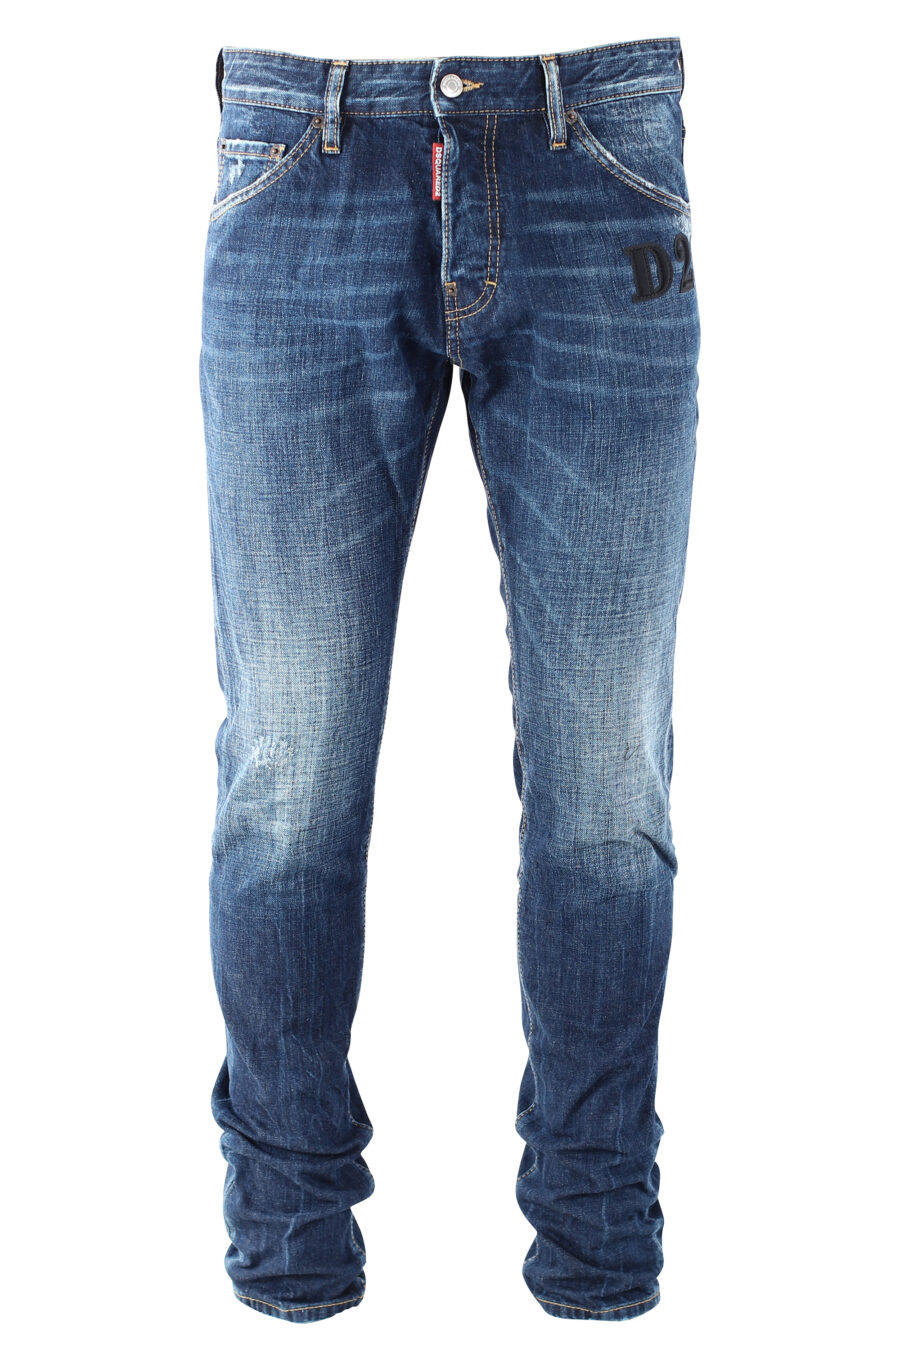 Calças de ganga "cool guy jean" azuis com logótipo "D2" preto - IMG 9686